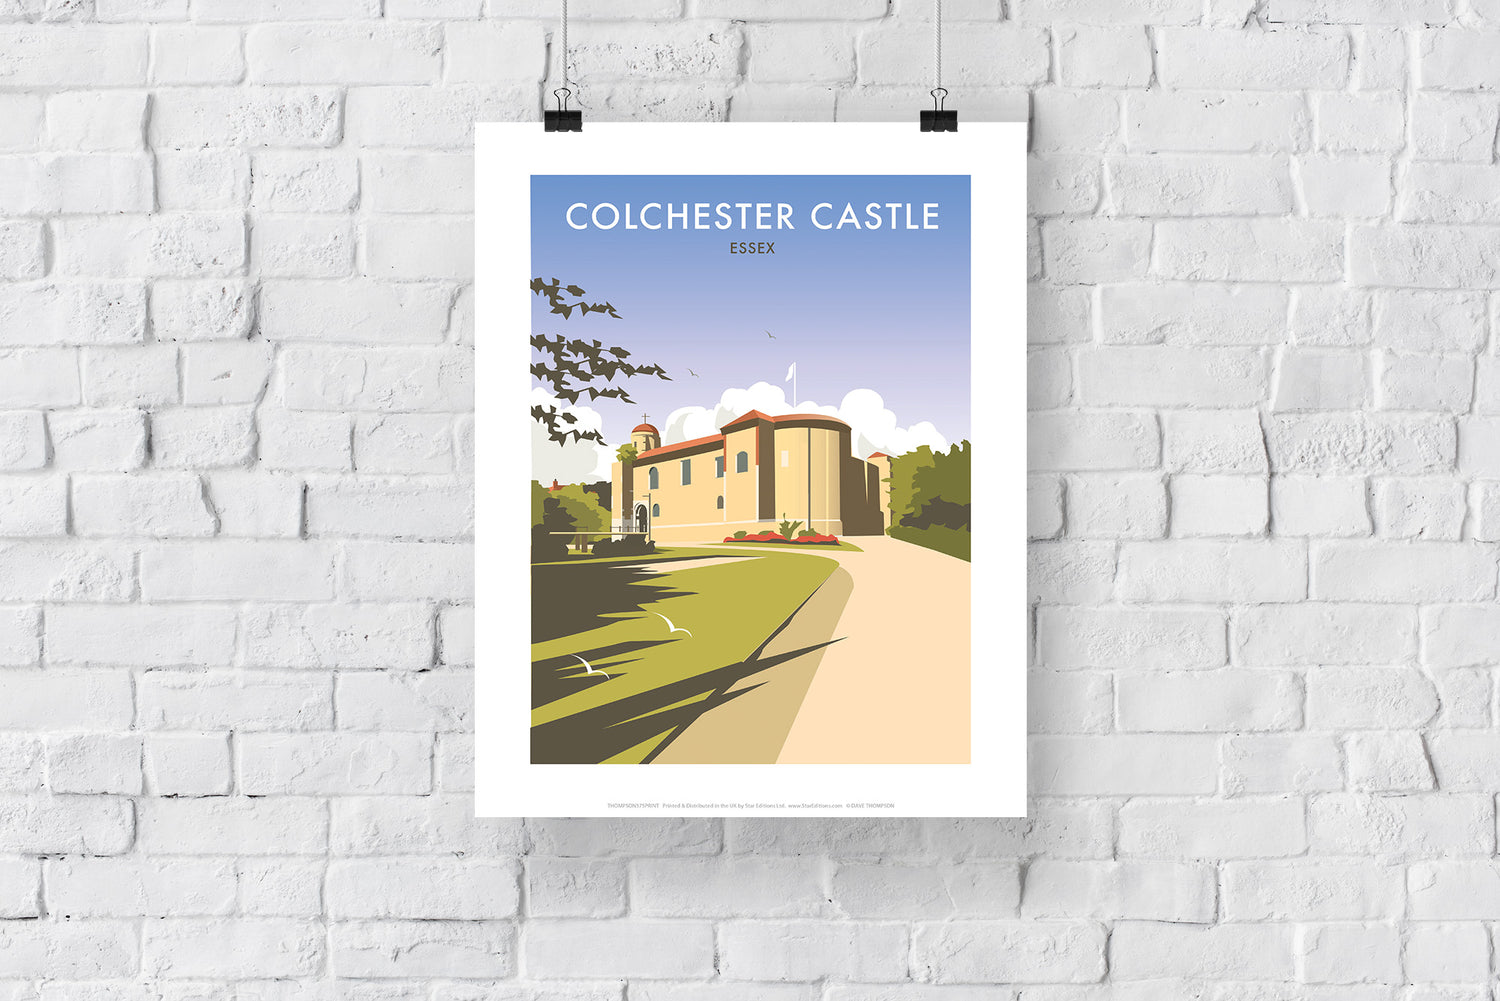 Colchester Castle - Art Print